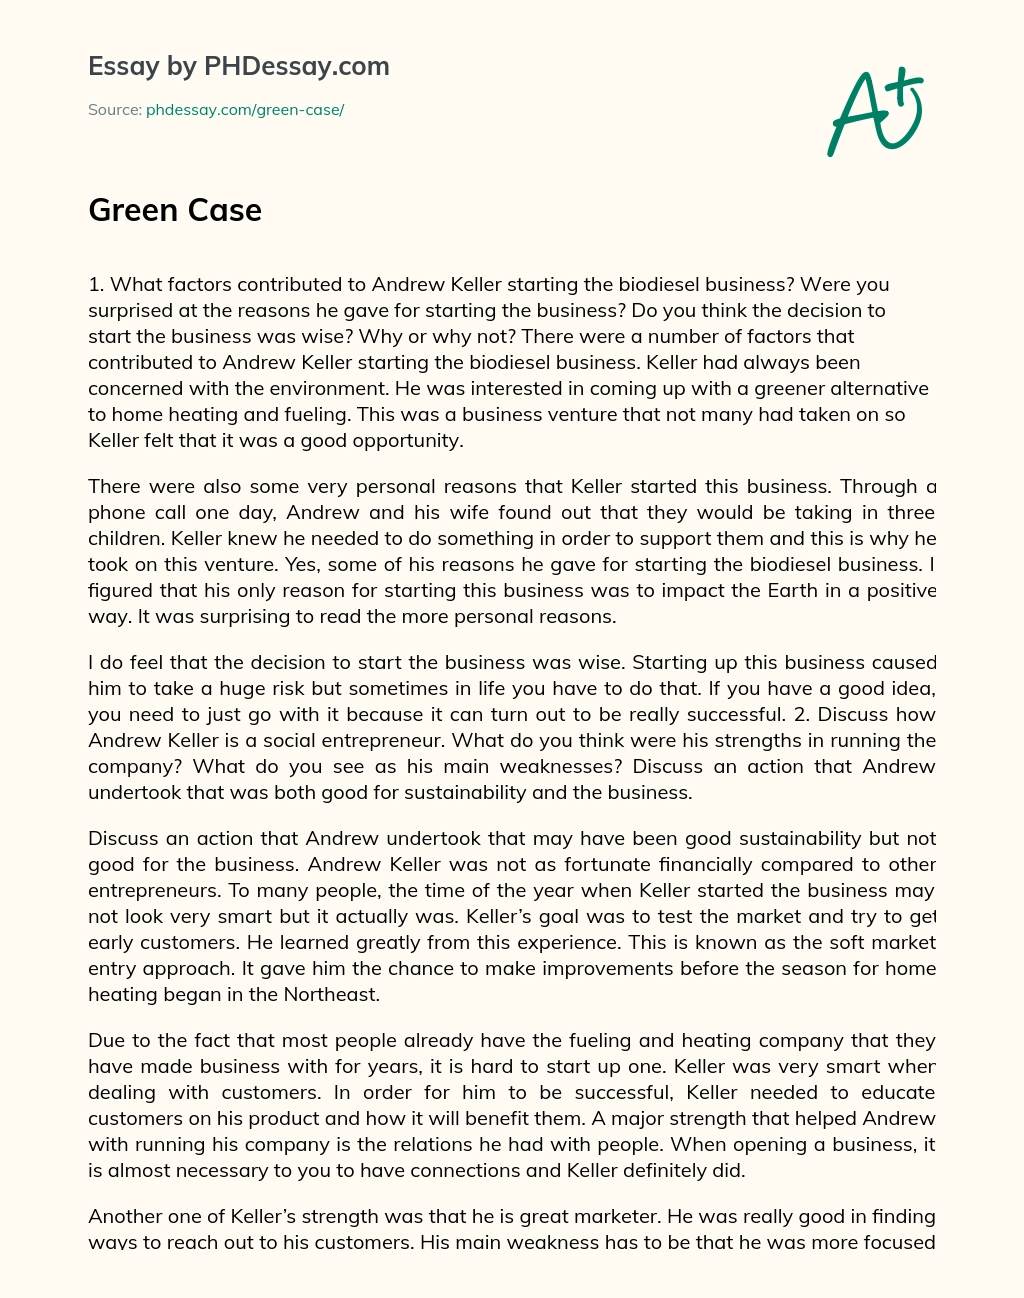 Green Case Biodiesel Business essay